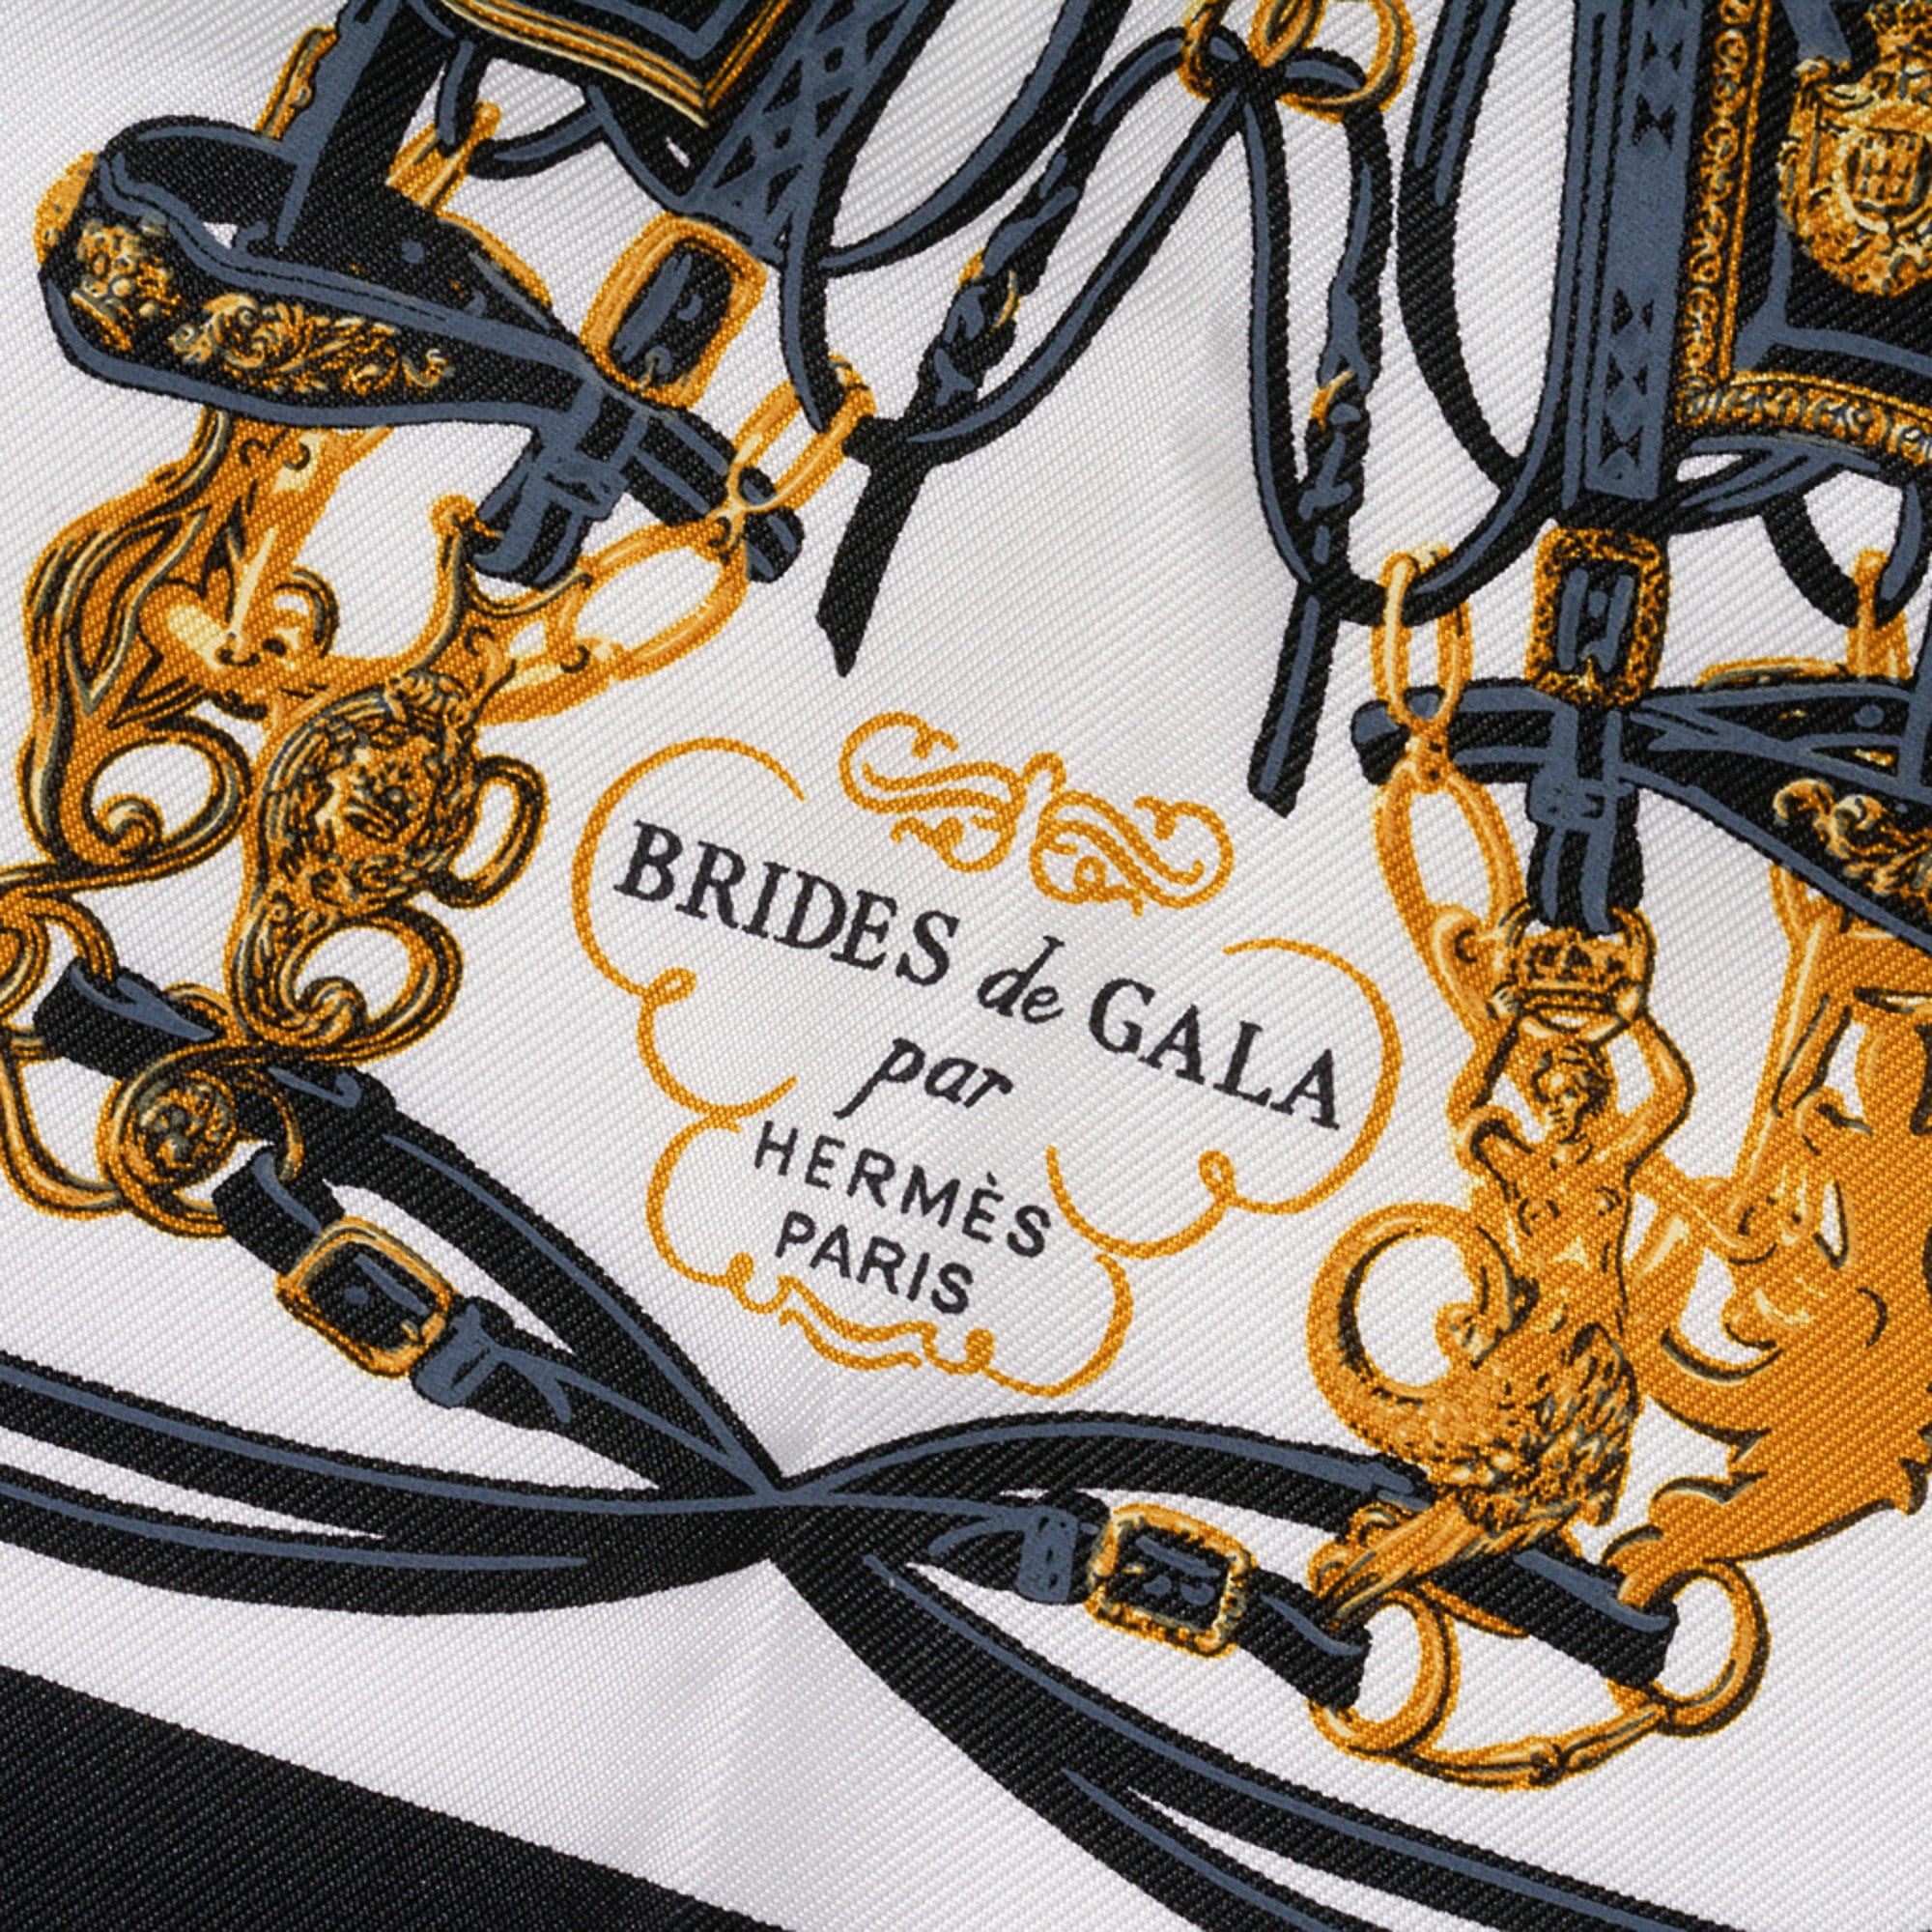 Hermes Brides de Gala Hermes Framed Scarf